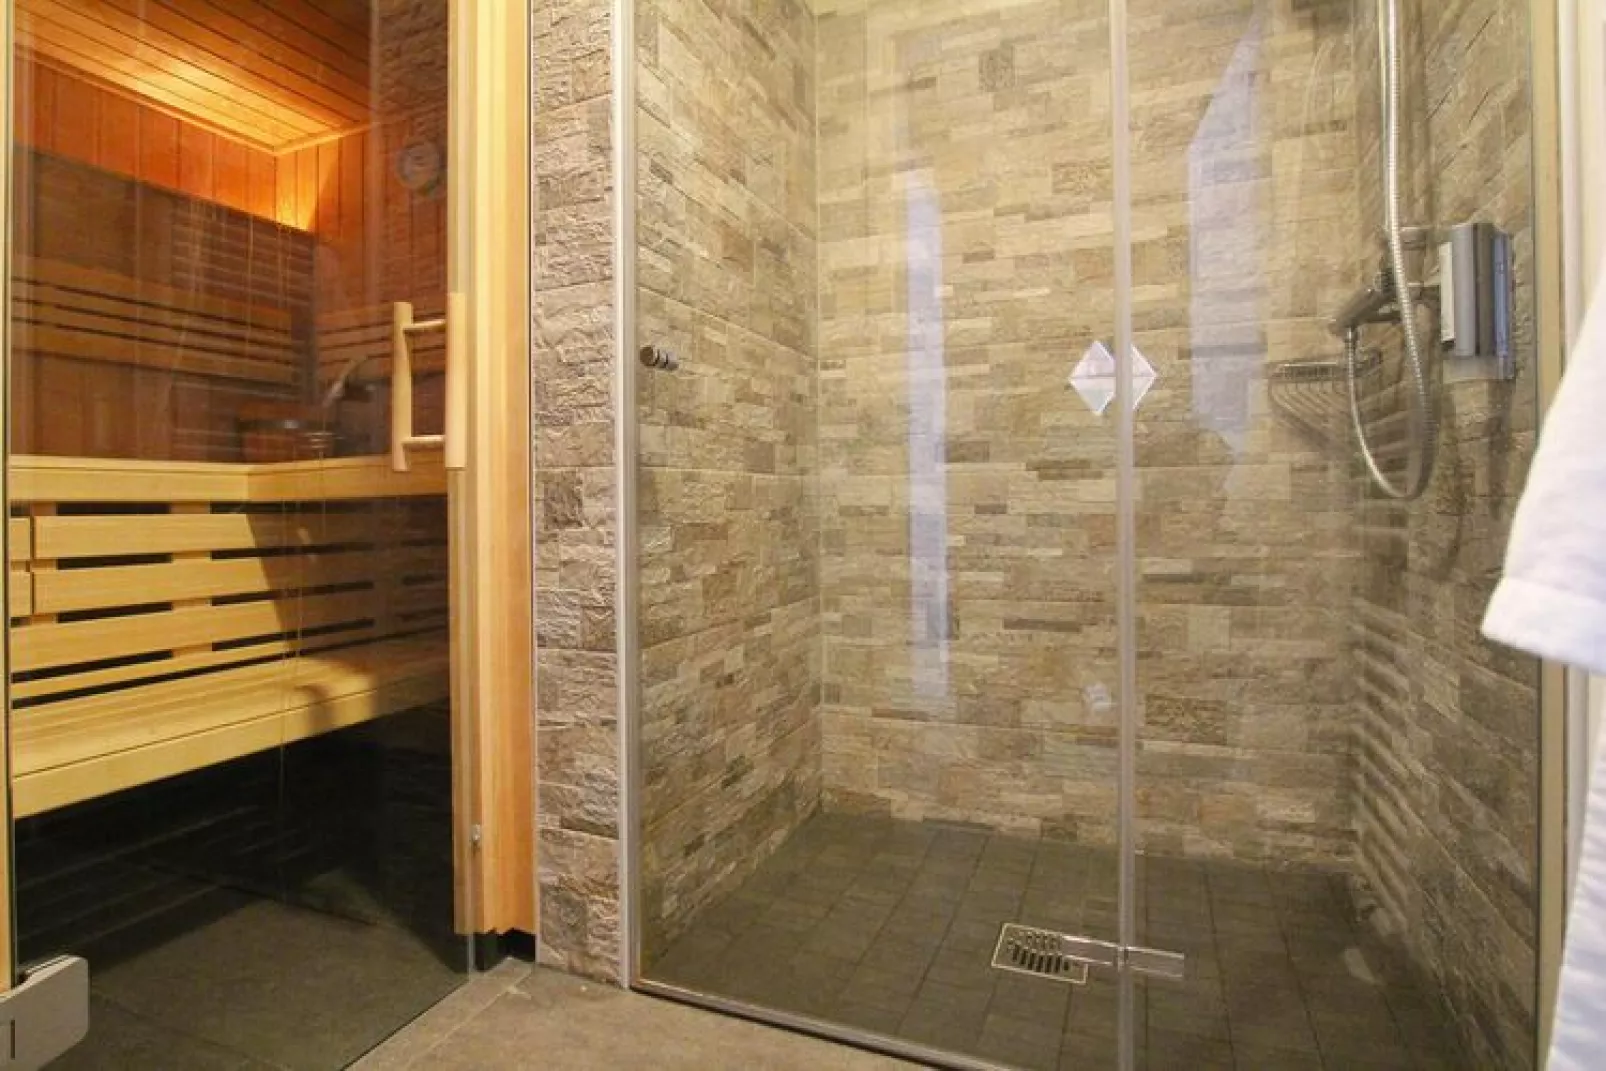 Premium Lodge Plus best Price 5 Personen-Sauna